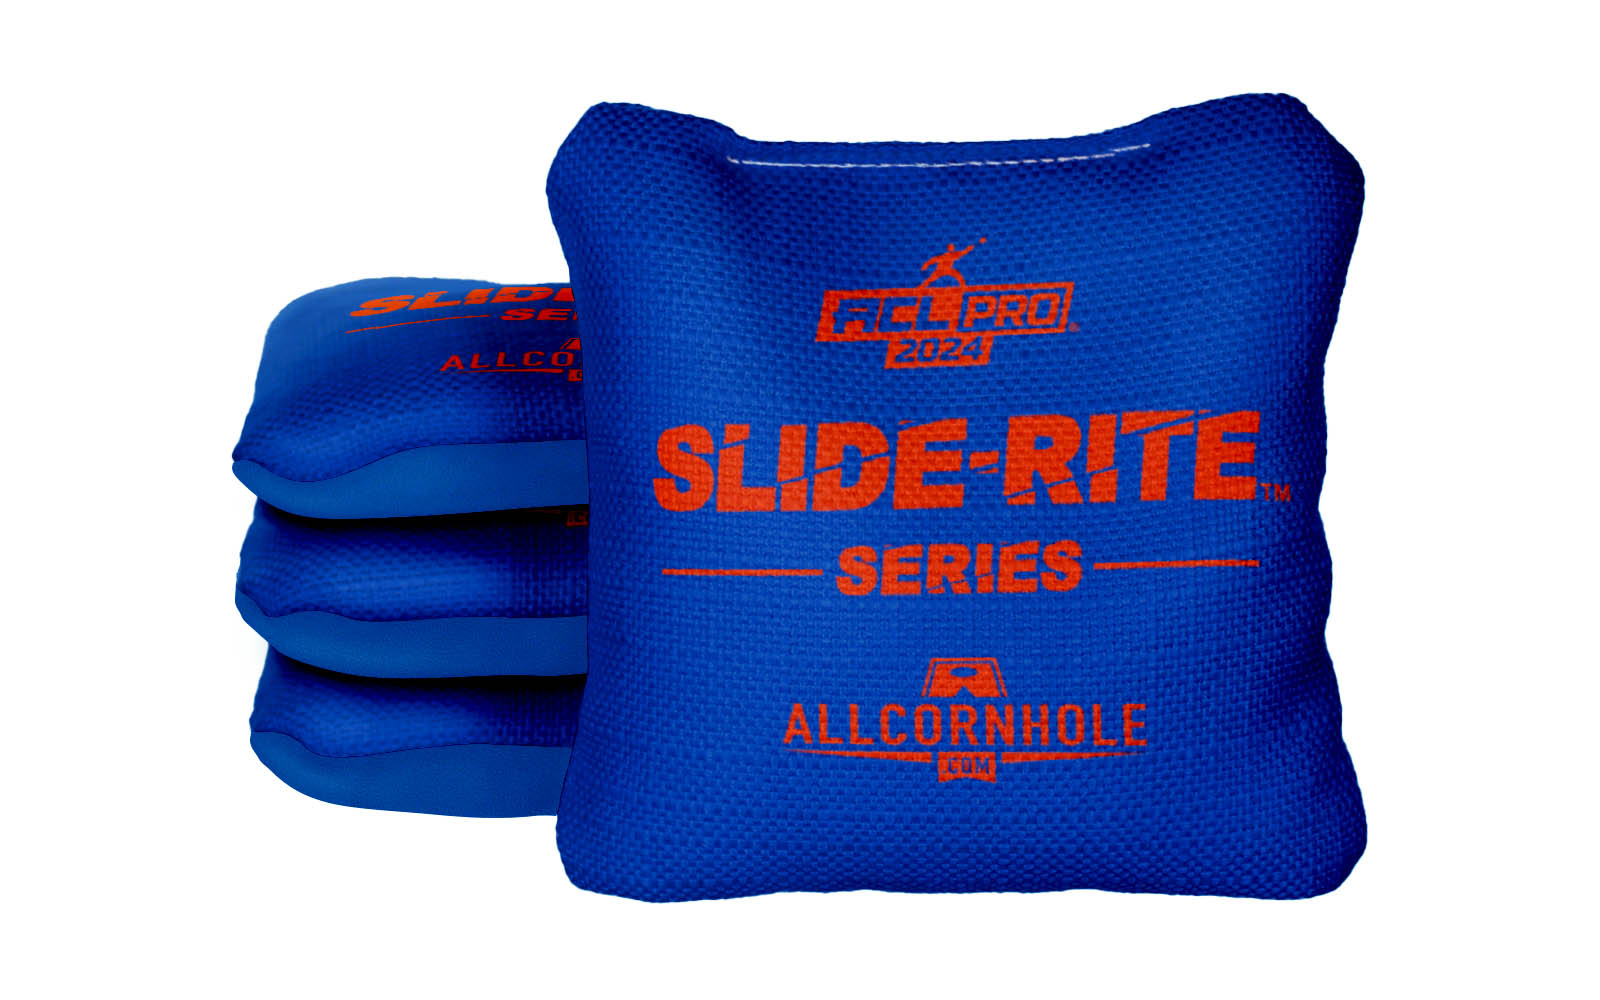 Officially Licensed Collegiate Cornhole Bags - AllCornhole Slide Rite - Set of 4 - University of Florida